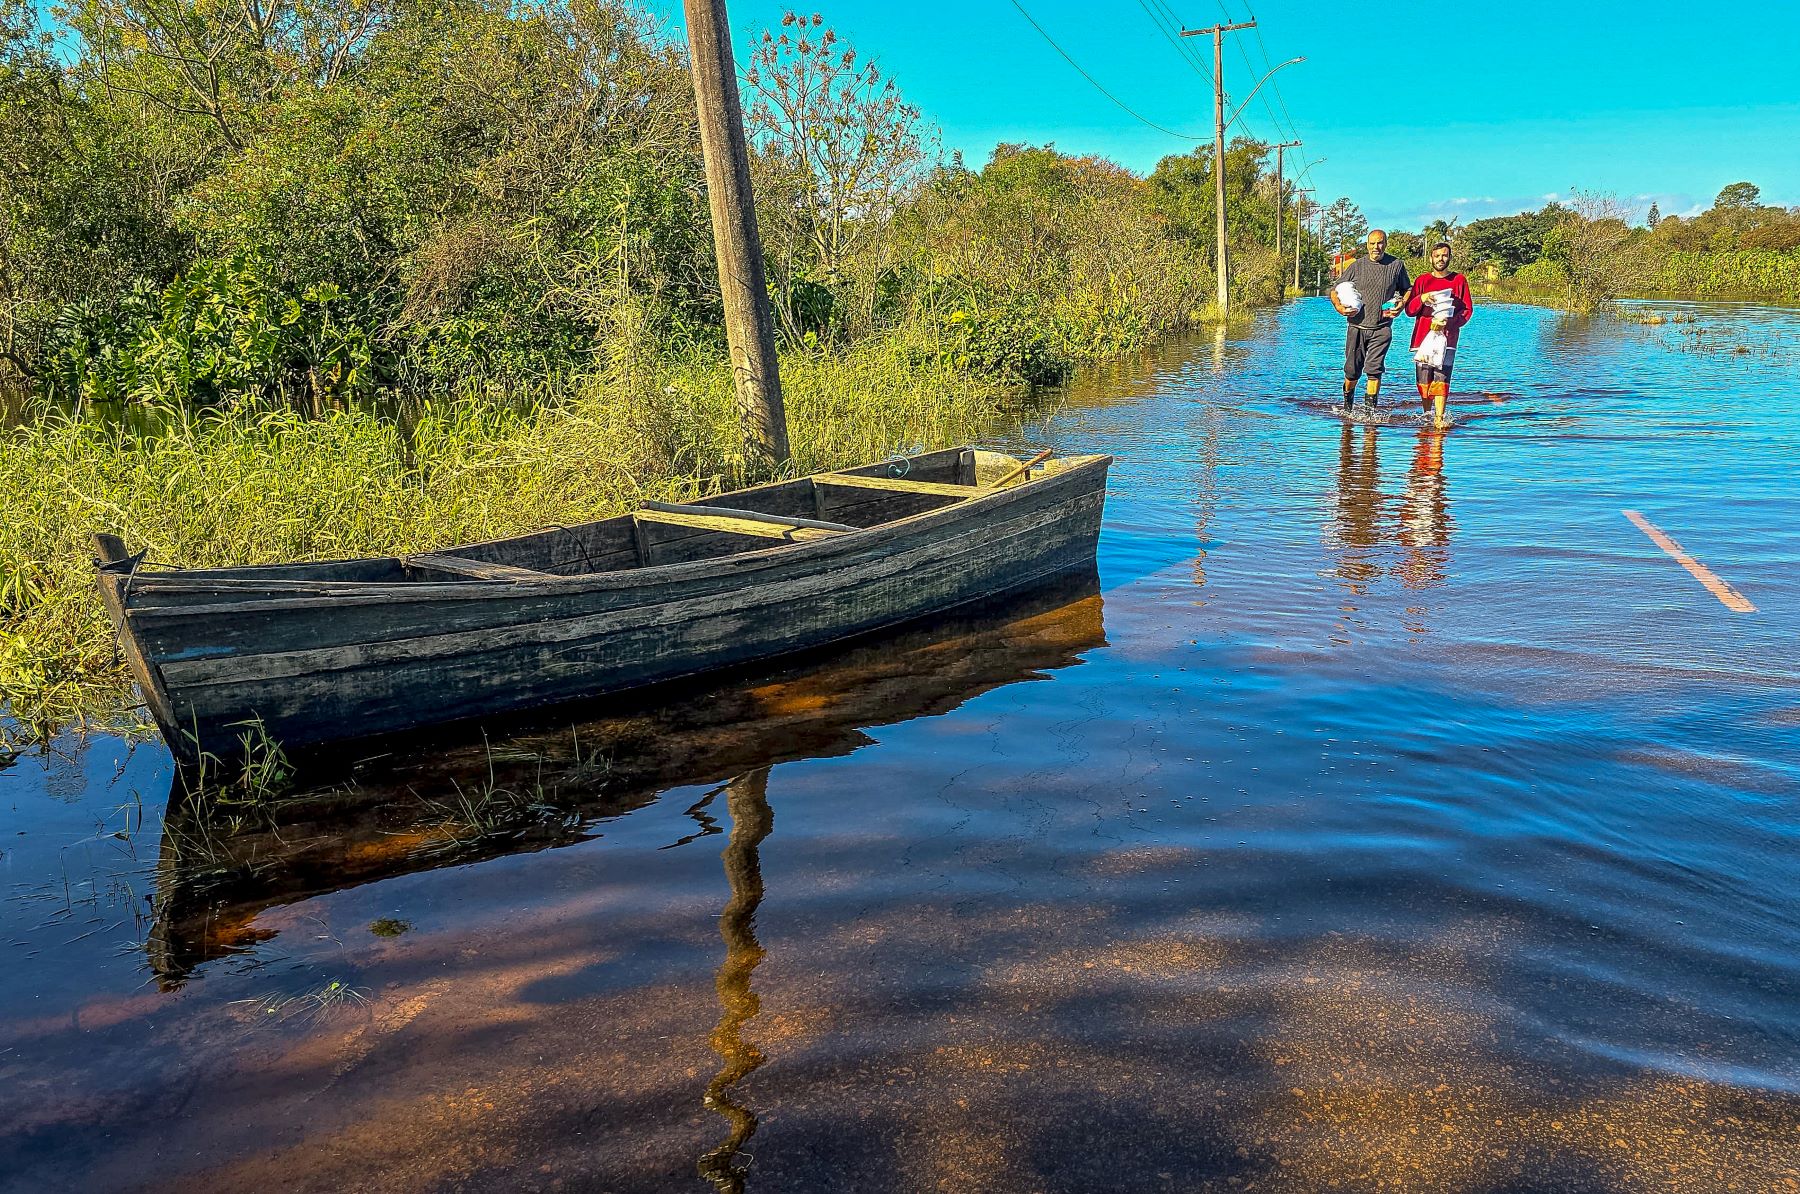 Bairro alagado em Pelotas, no sul do estado: recuperação precisa levar em conta aspectos sociais, ambientais e geográficos (Foto: Rafa Neddermeyer / Agência Brasil)